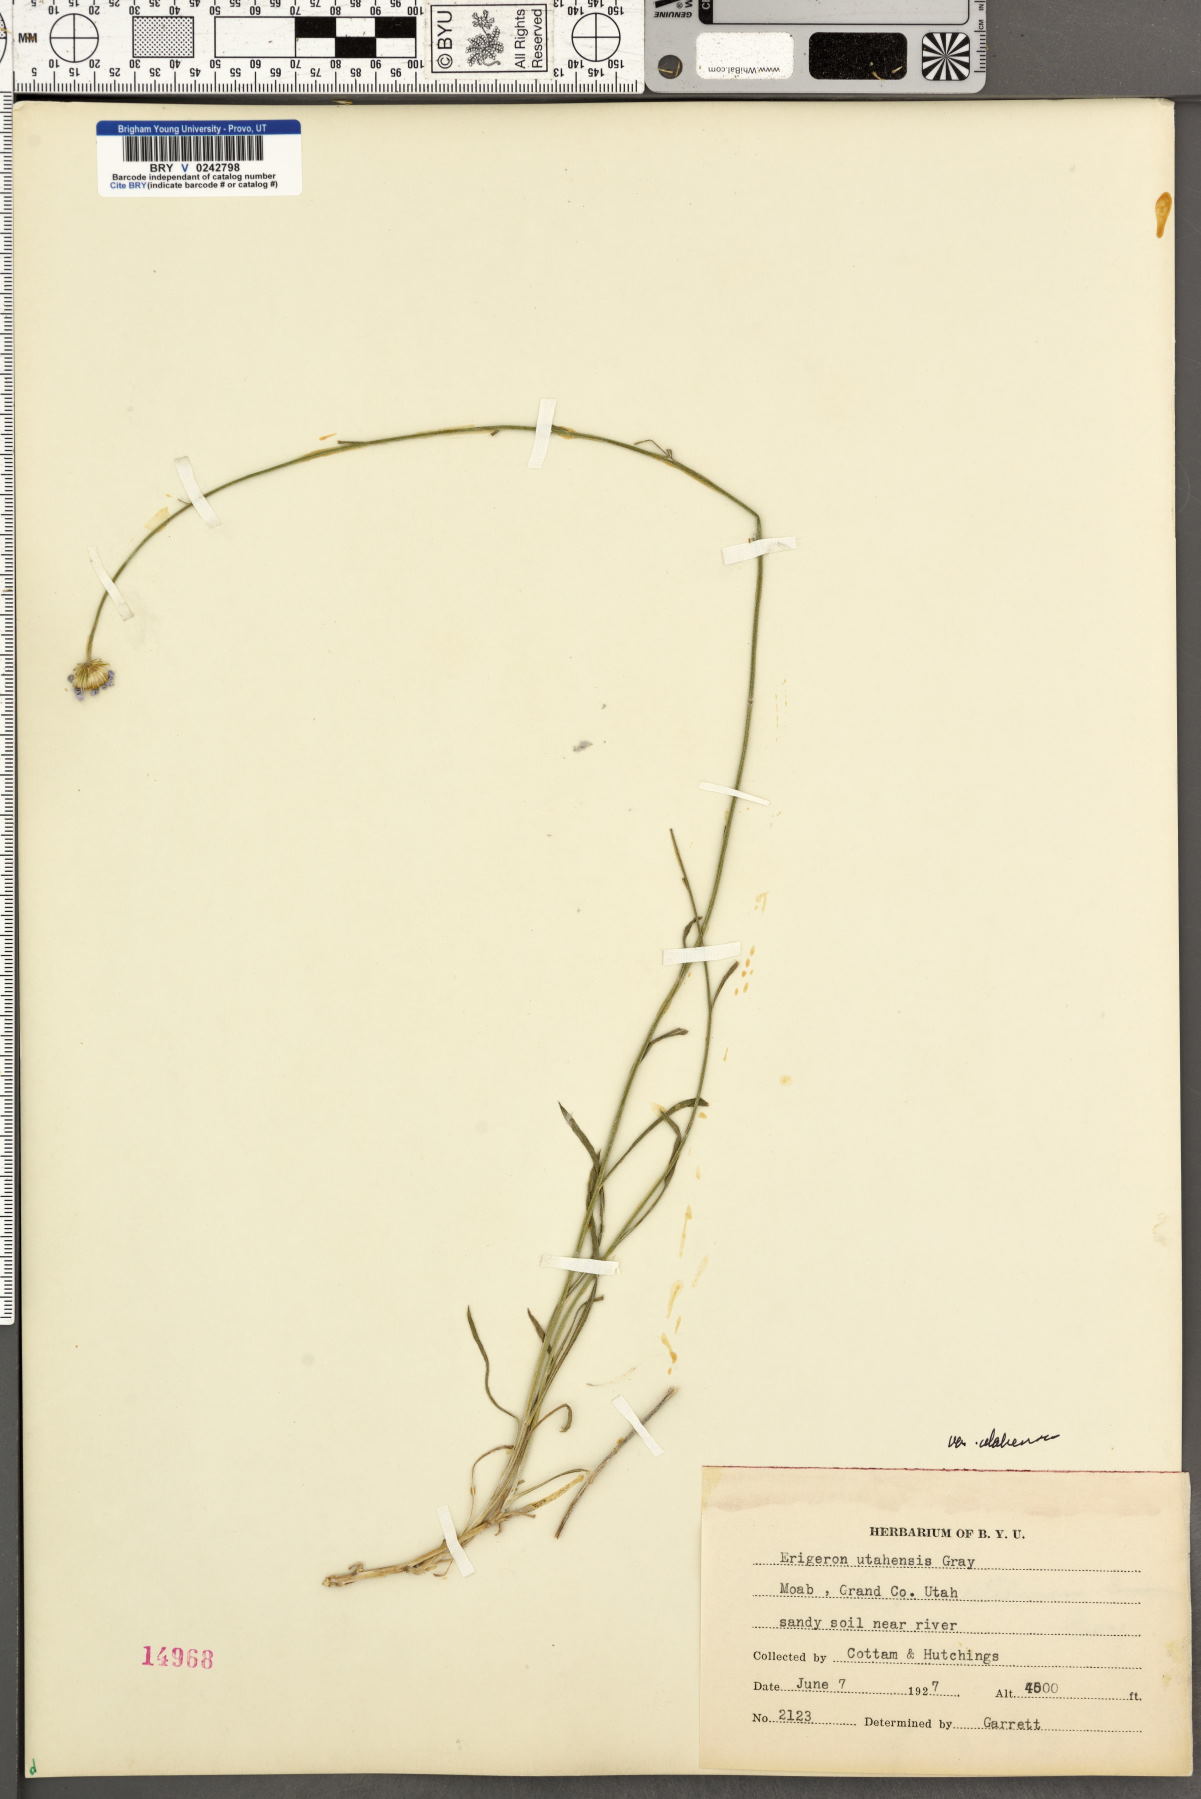 Erigeron utahensis var. utahensis image